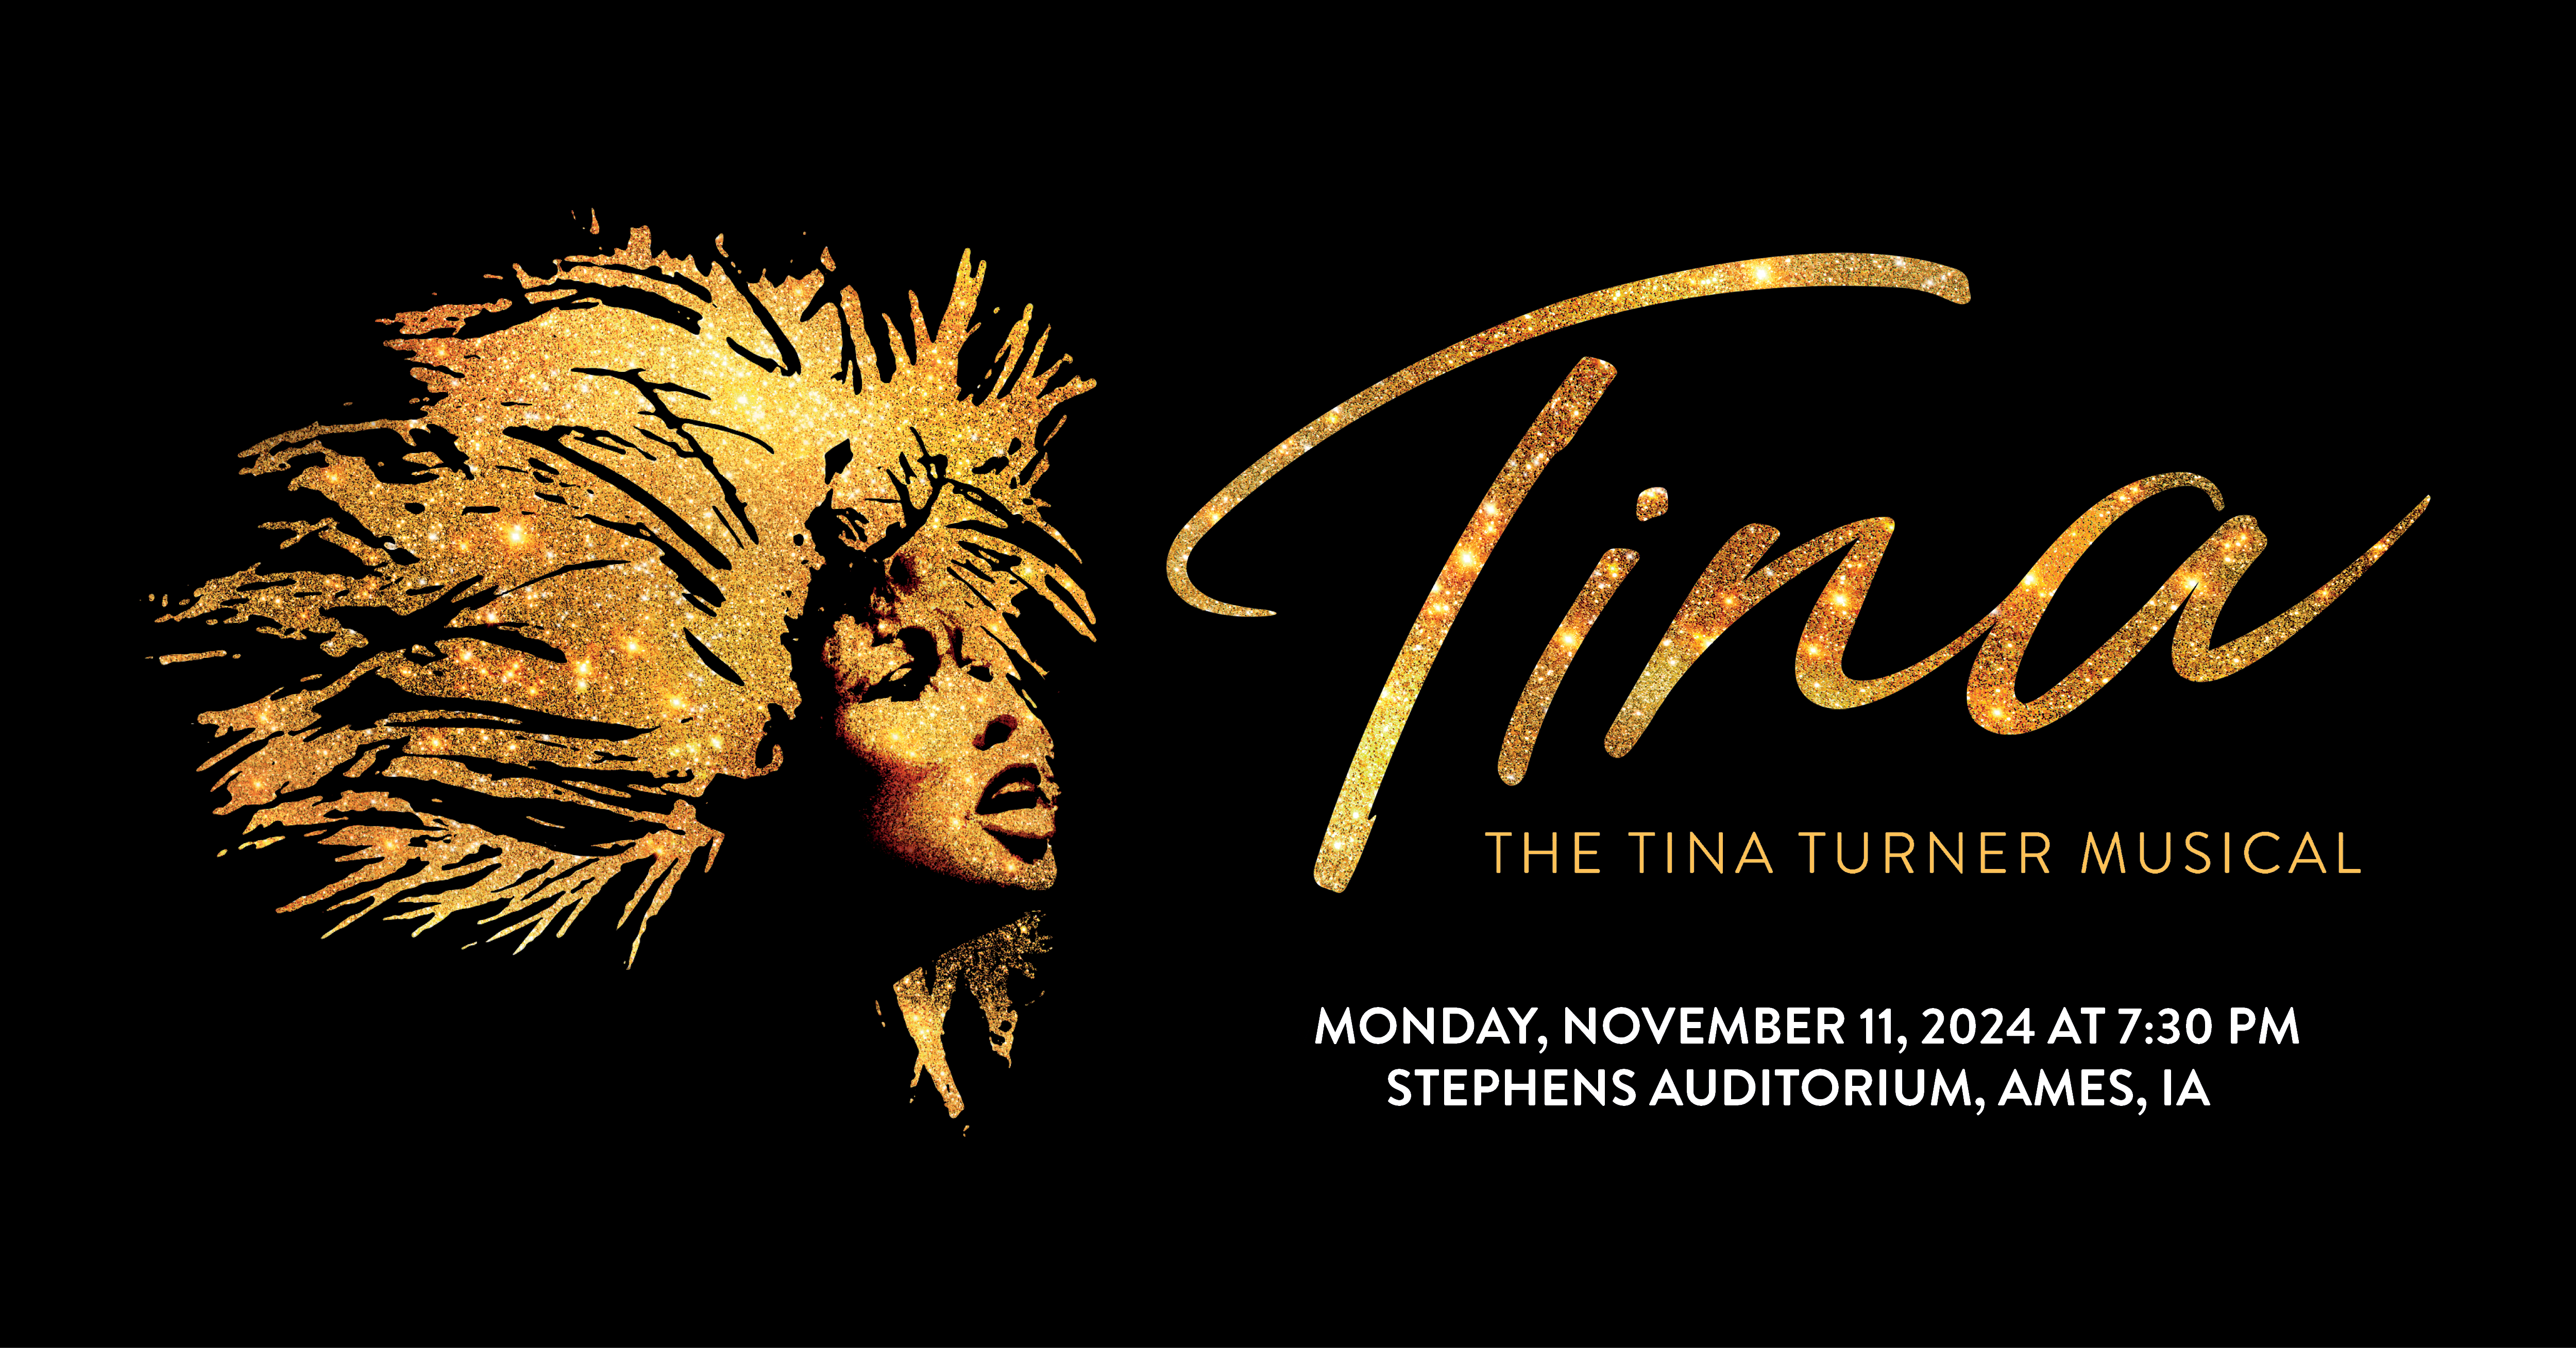 TINA - The Tina Turner Musical